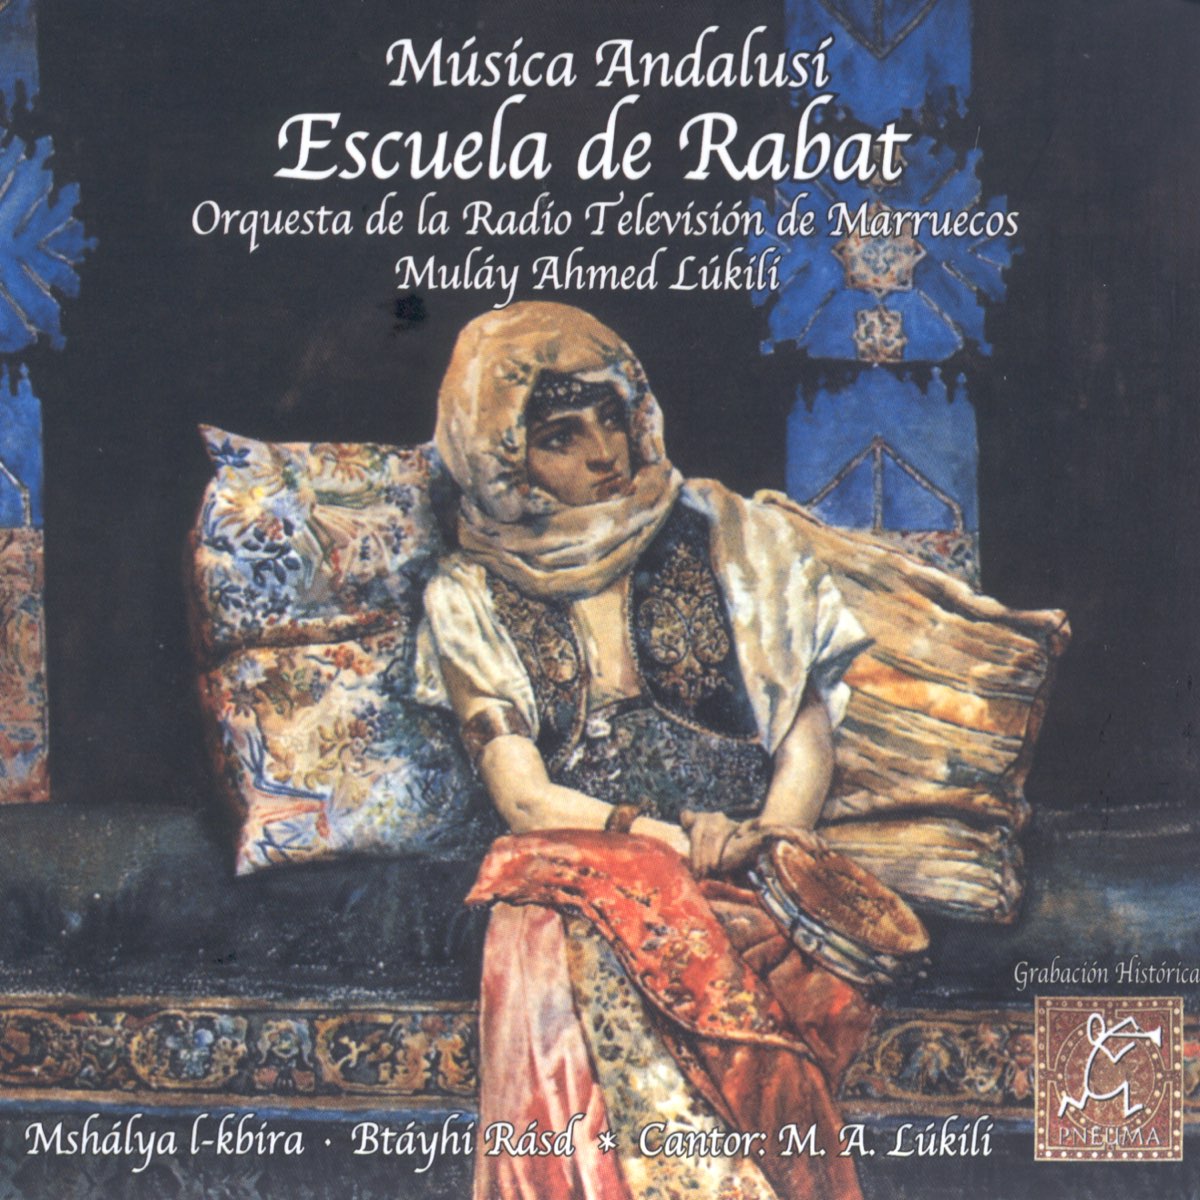 Escuela de Rabat par Orquesta De La Radio-Televisión De Marruecos & Muláy  Ahmed Lúkílí sur Apple Music